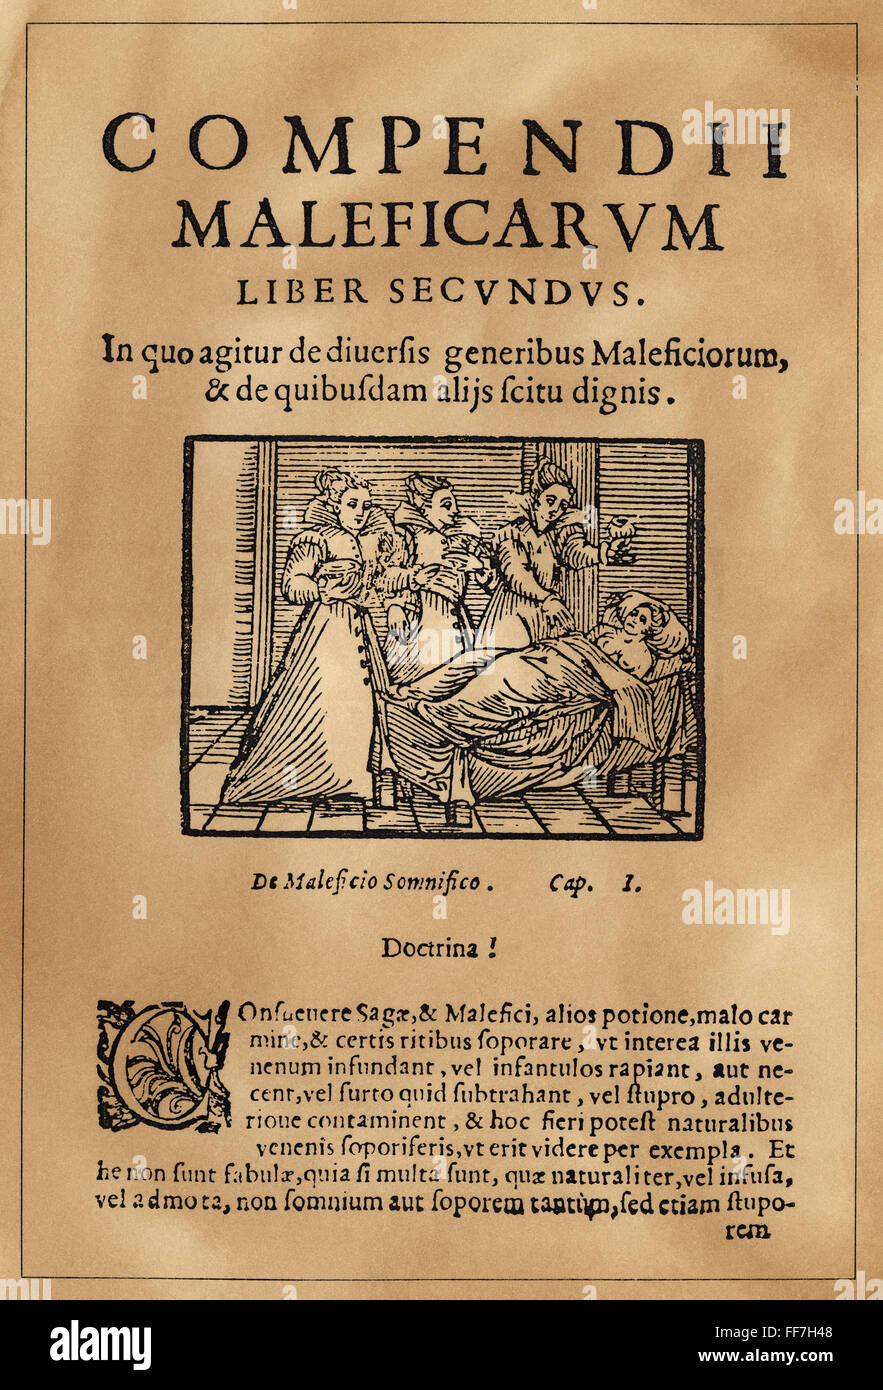 TITELSEITE DER HEXEREI. /nTitle Seite von "Compendium Maleficarum", ein Ende des 15. Jahrhunderts Europäische Abhandlung über Hexerei und Dämonologie. Stockfoto